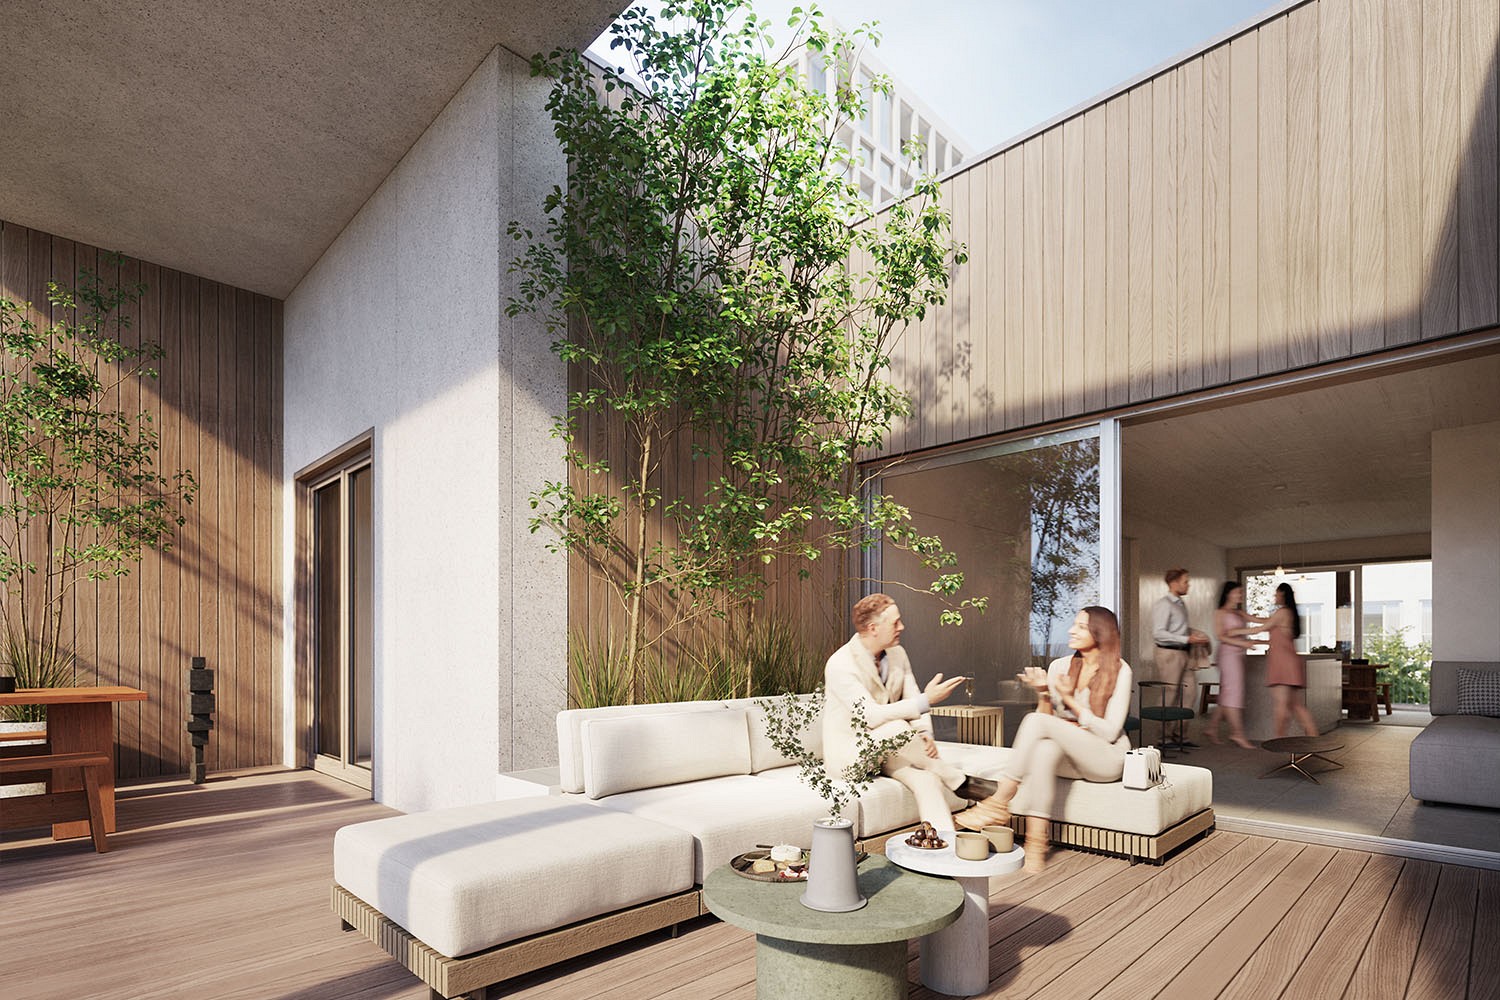 Boomgaard, Nieuw Zuid: rendering of terrace